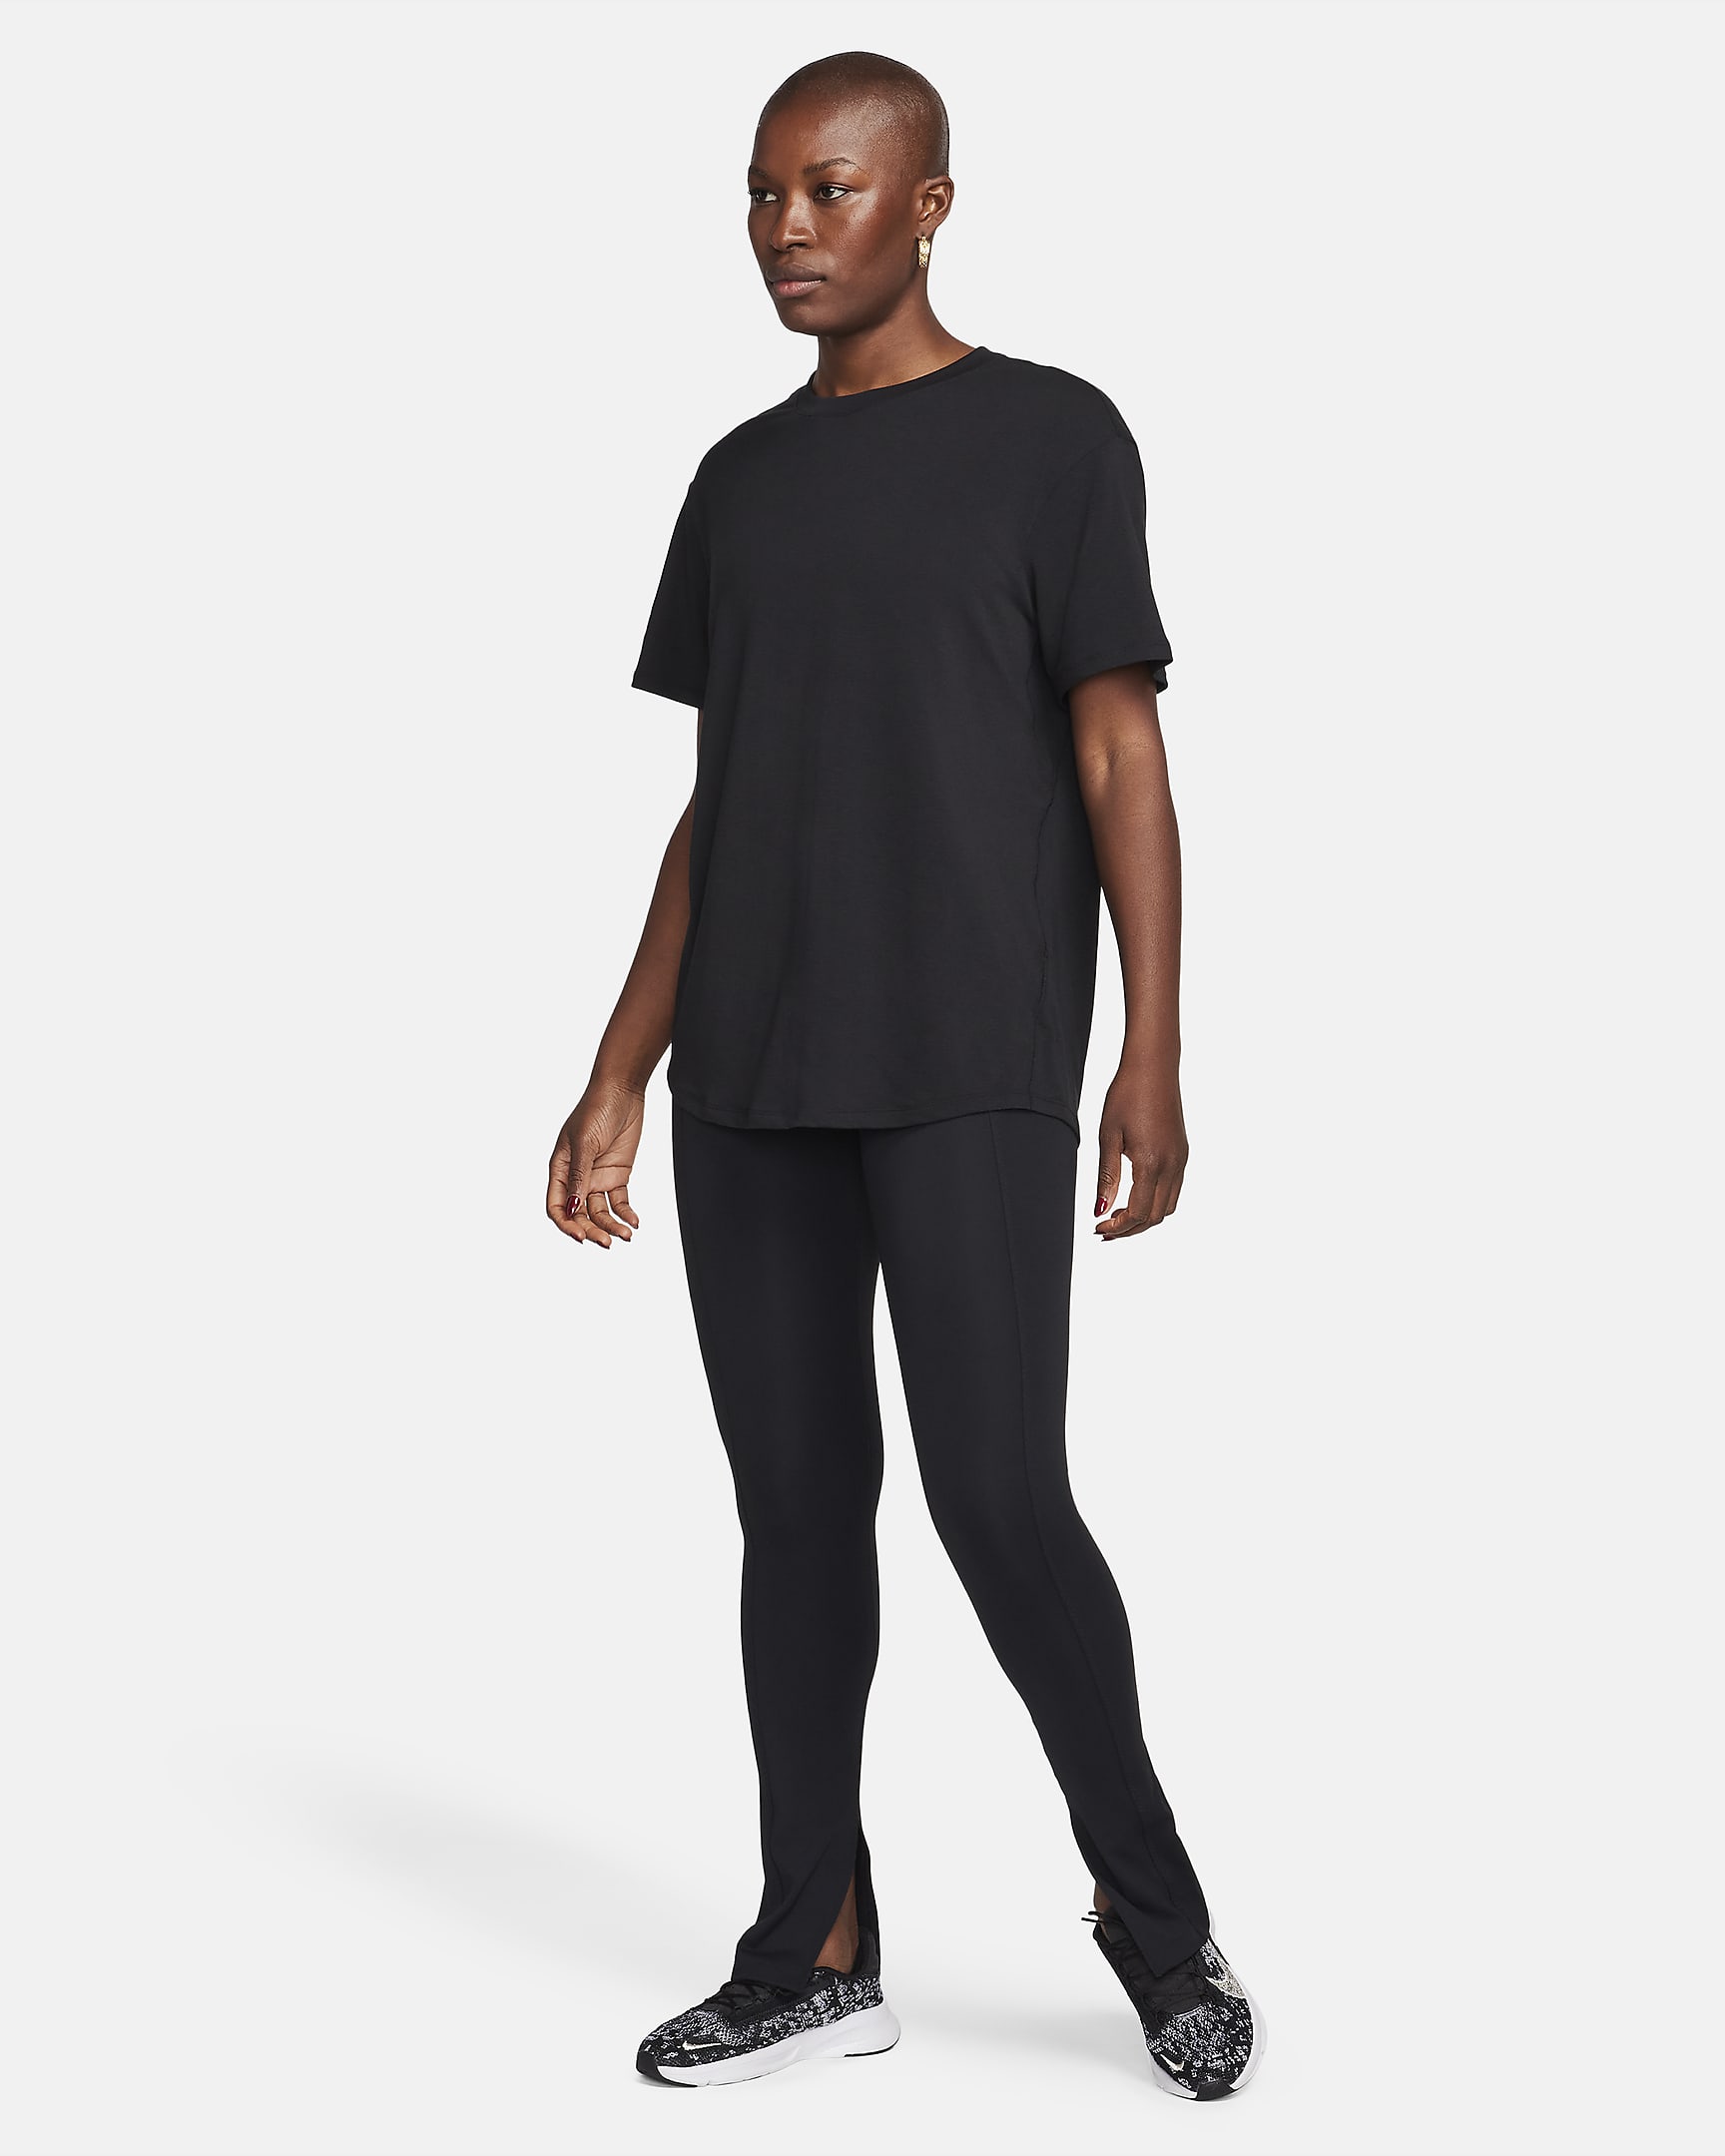 Nike One Relaxed Dri-FIT damestop met korte mouwen - Zwart/Zwart